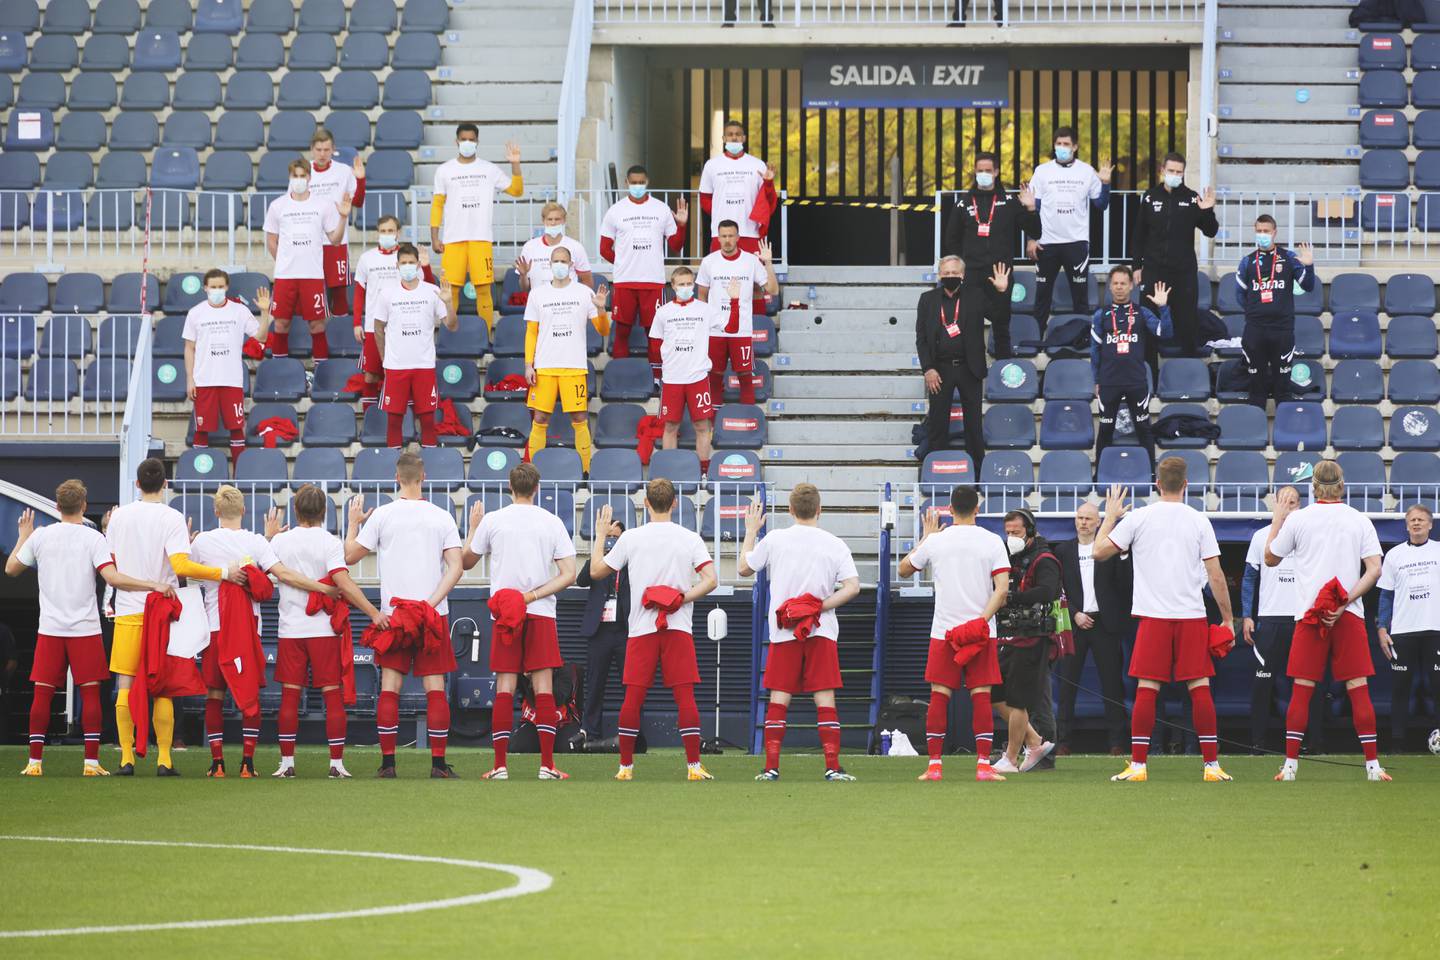 Det norske laget under nasjonalsangen før avspark mot Tyrkia. Foto: Geir Olsen / NTB